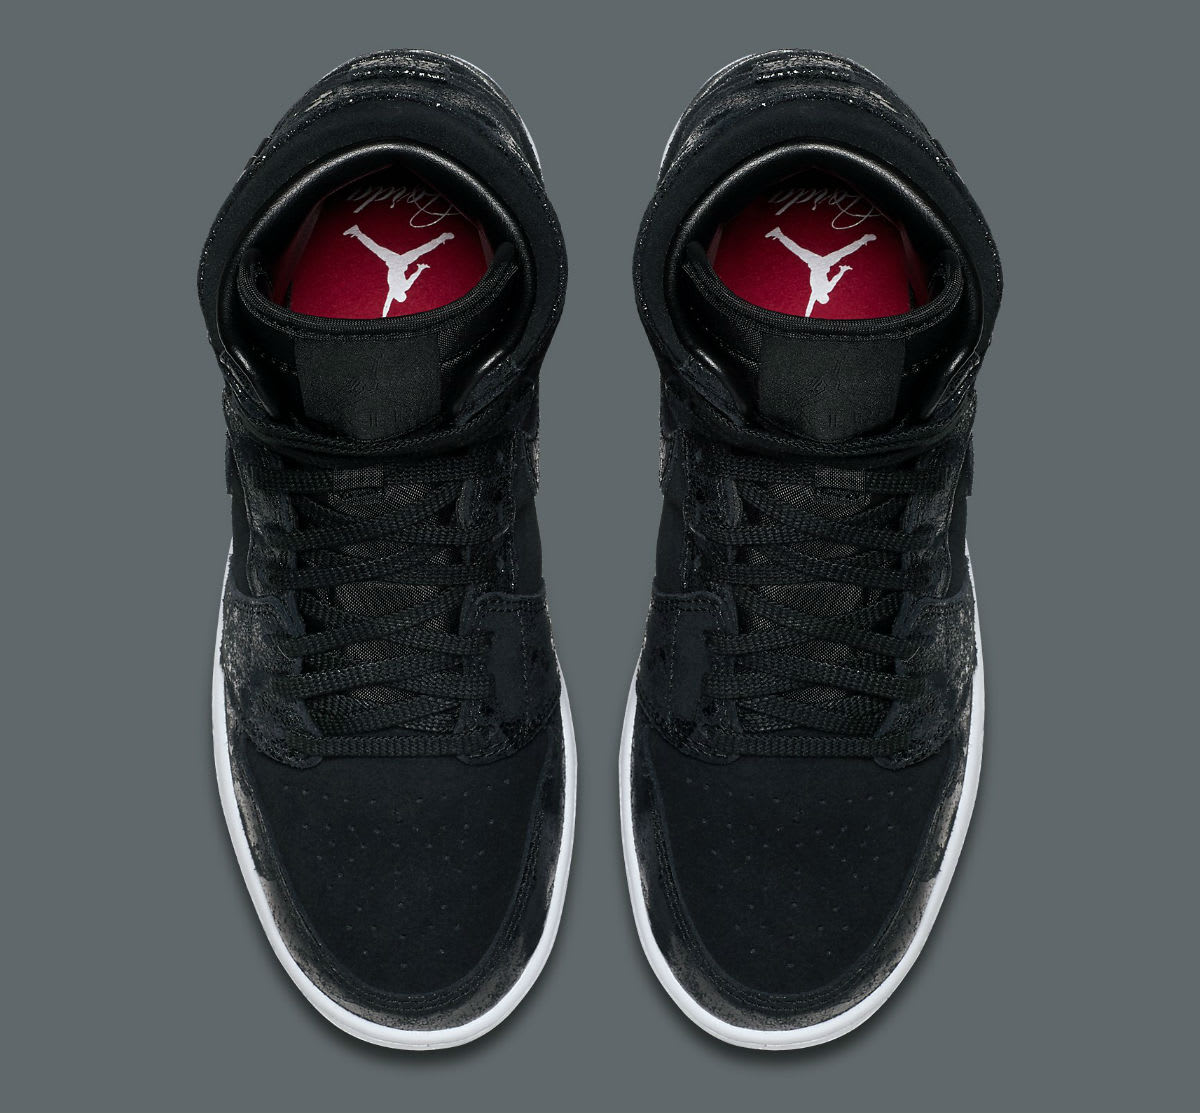 Air Jordan 1 Heiress Black Suede Release Date Top 832596-001